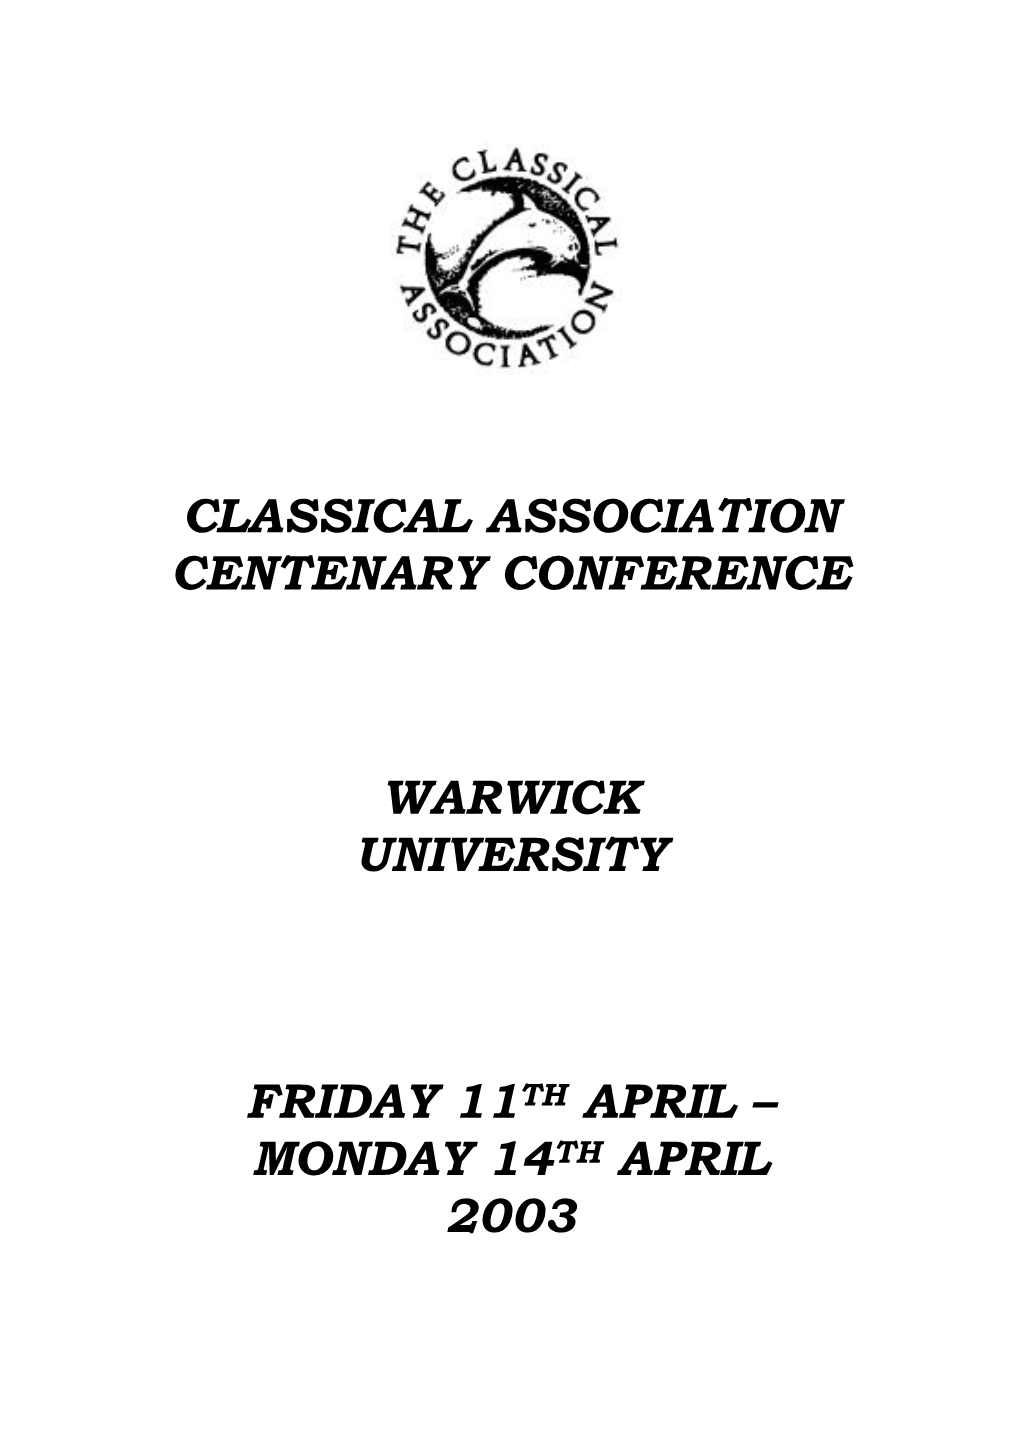 2003: University of Warwick